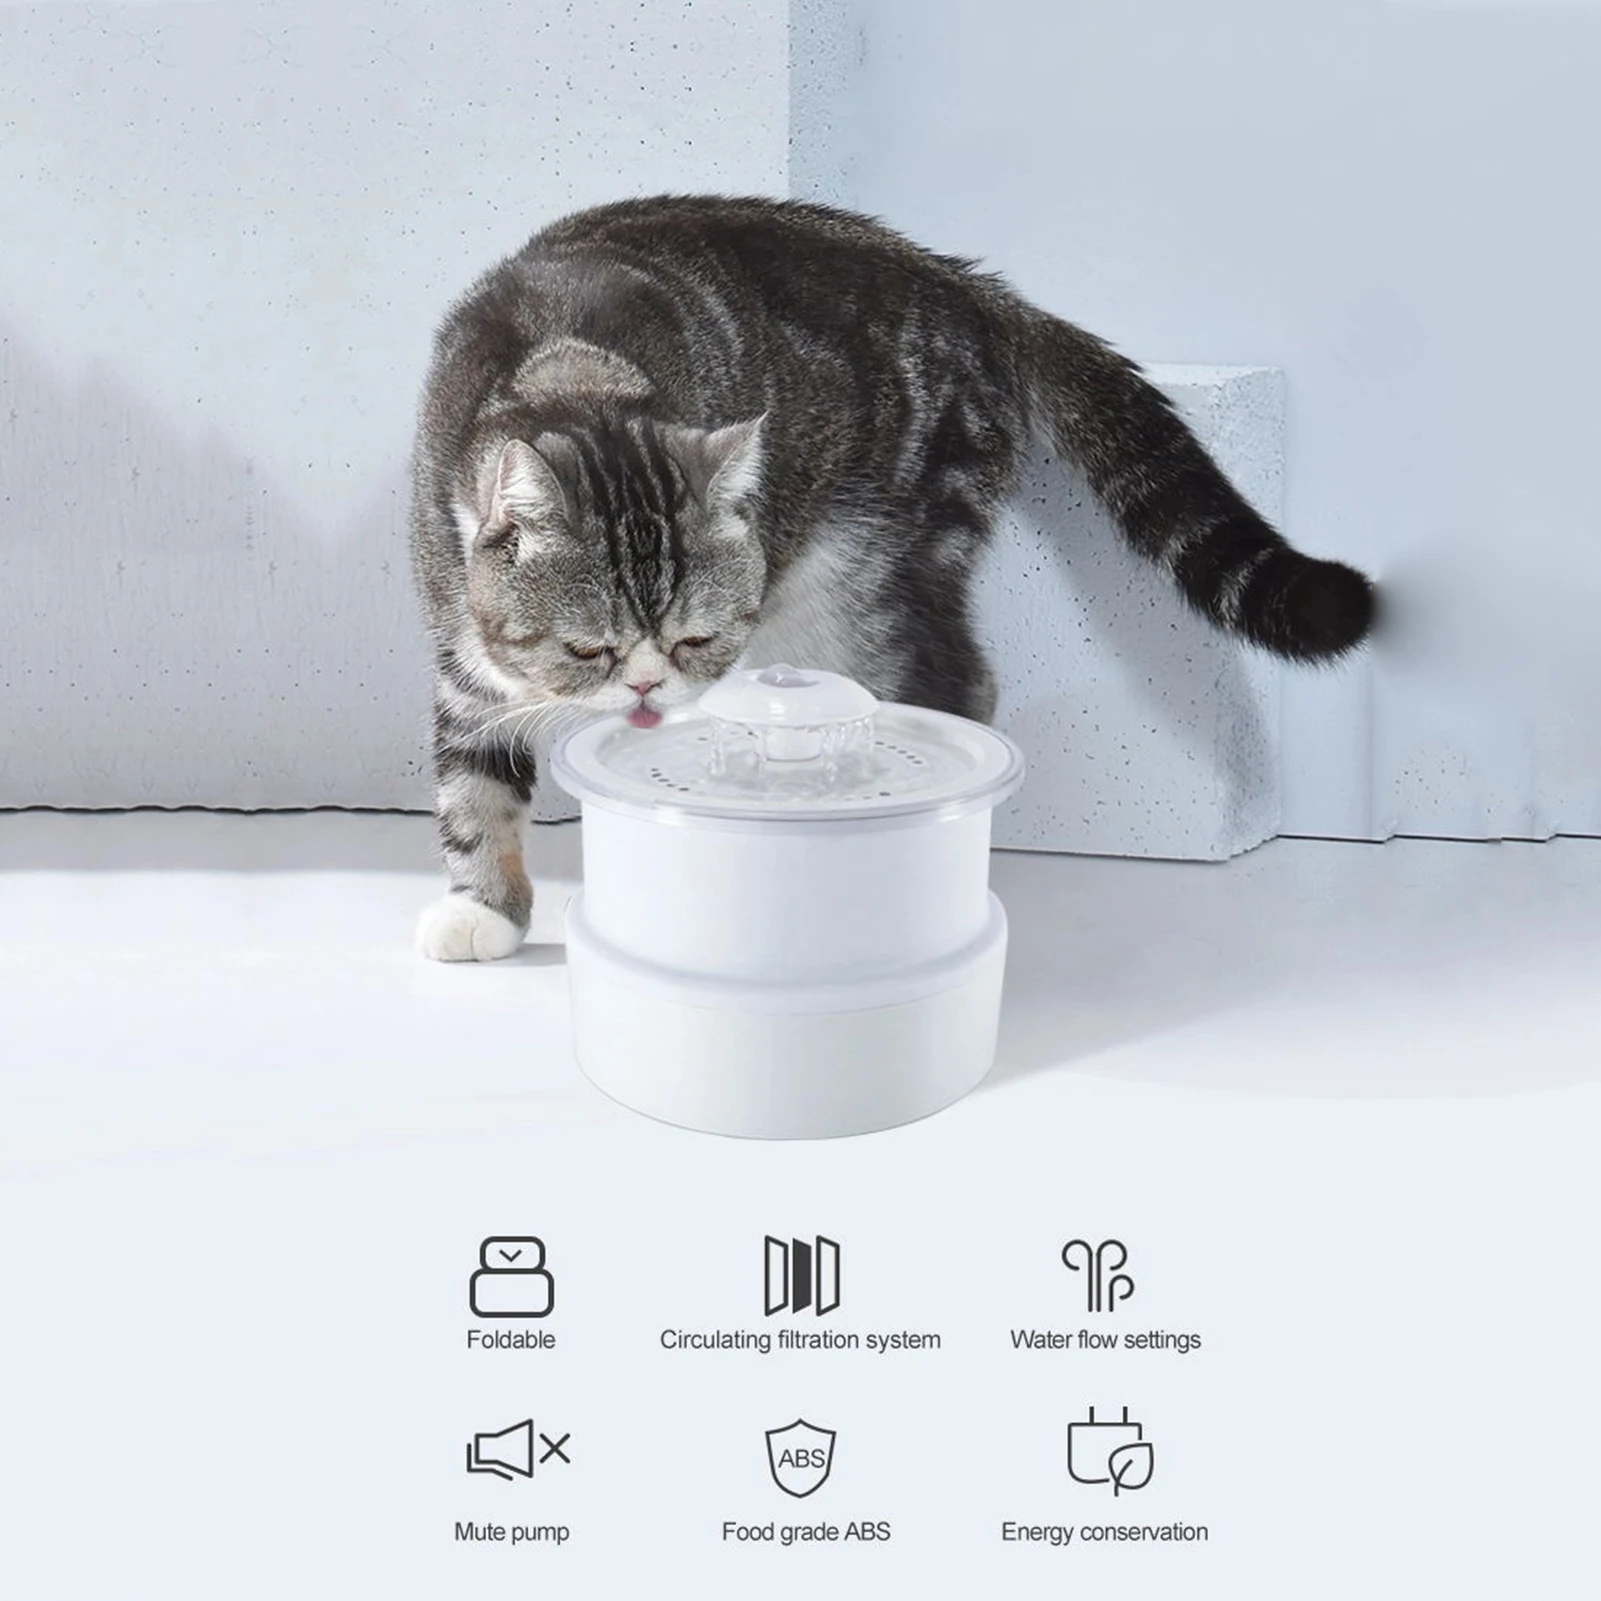 

Автоматический диспенсер для воды для питомца кота USB светодиодный 2.4L ультра Тихая миска для питья собаки поилка для питья миска для питья д...